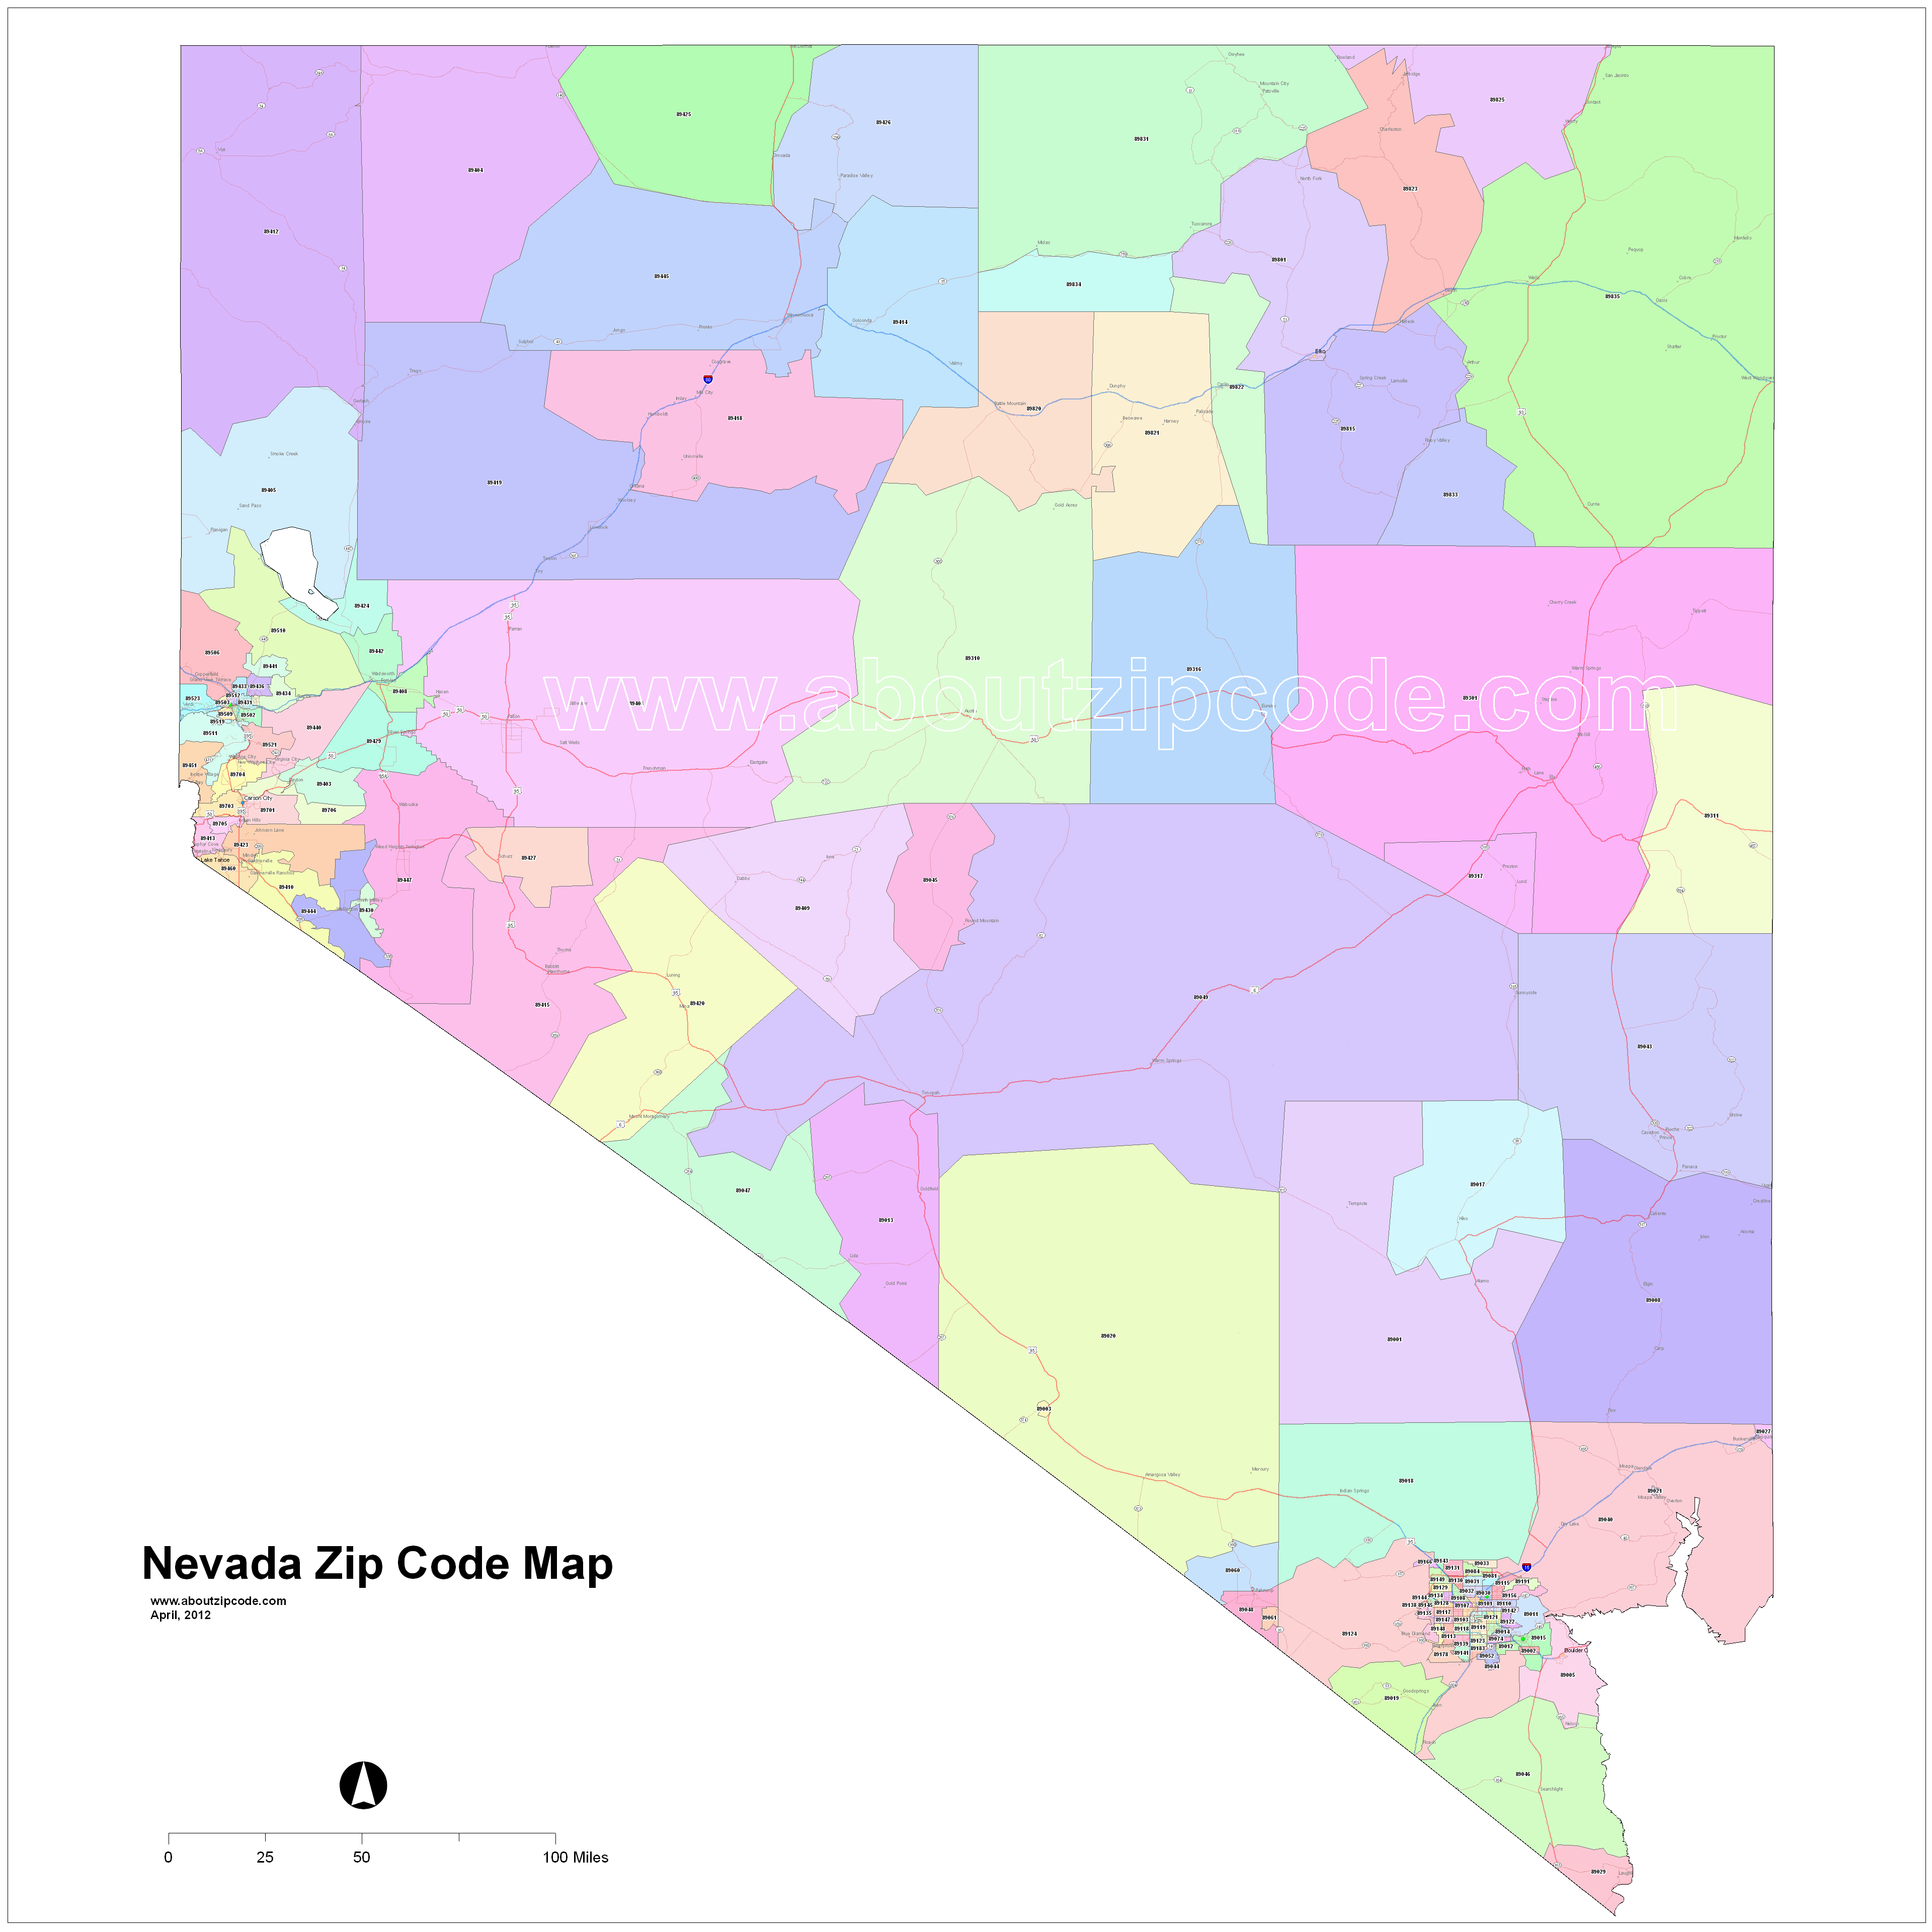 Nevada Zip Code Maps Free Nevada Zip Code Maps 0968